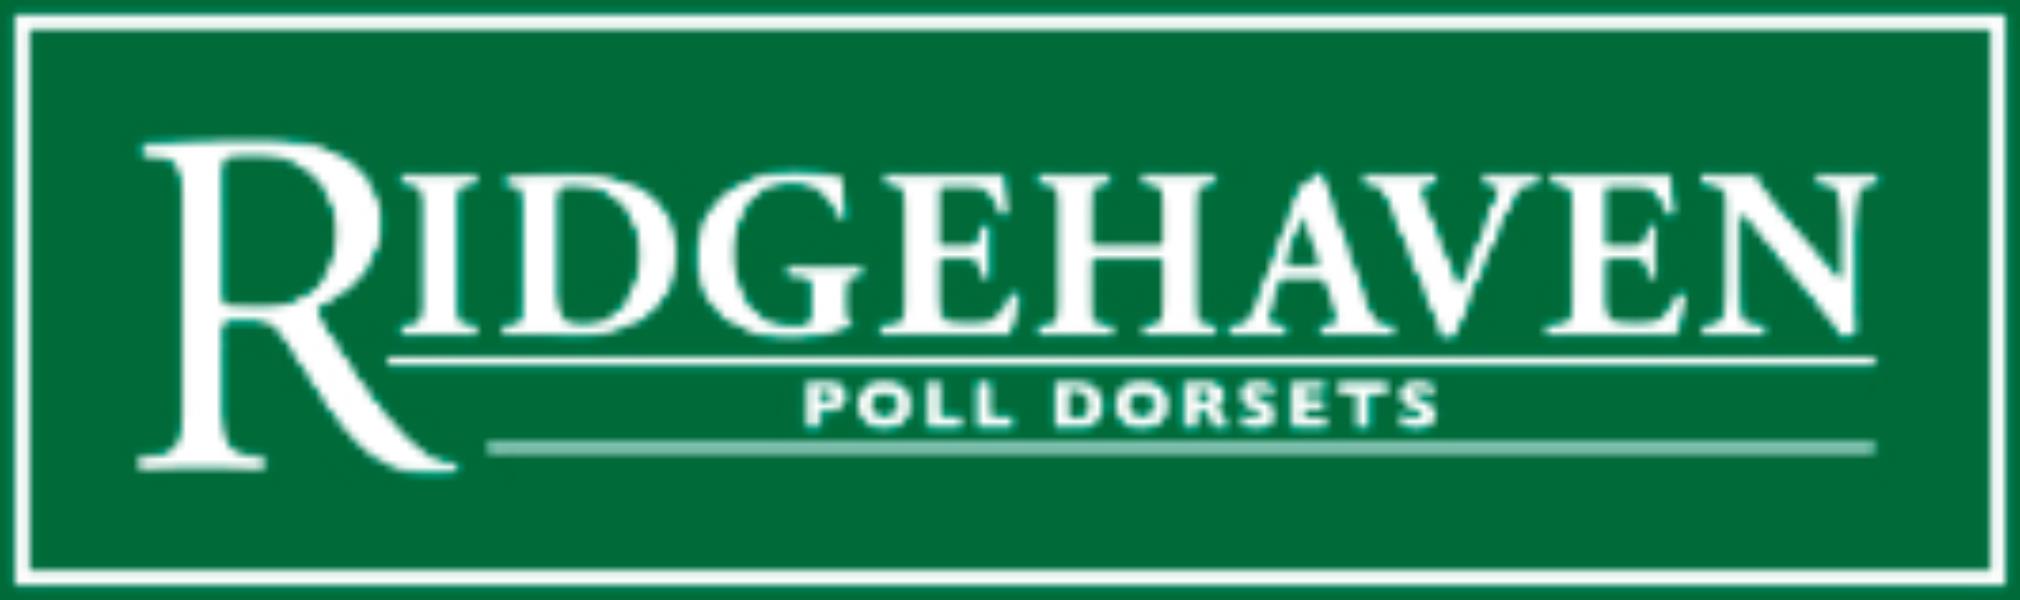 Ridgehaven Poll Dorsets "Ridgehaven"